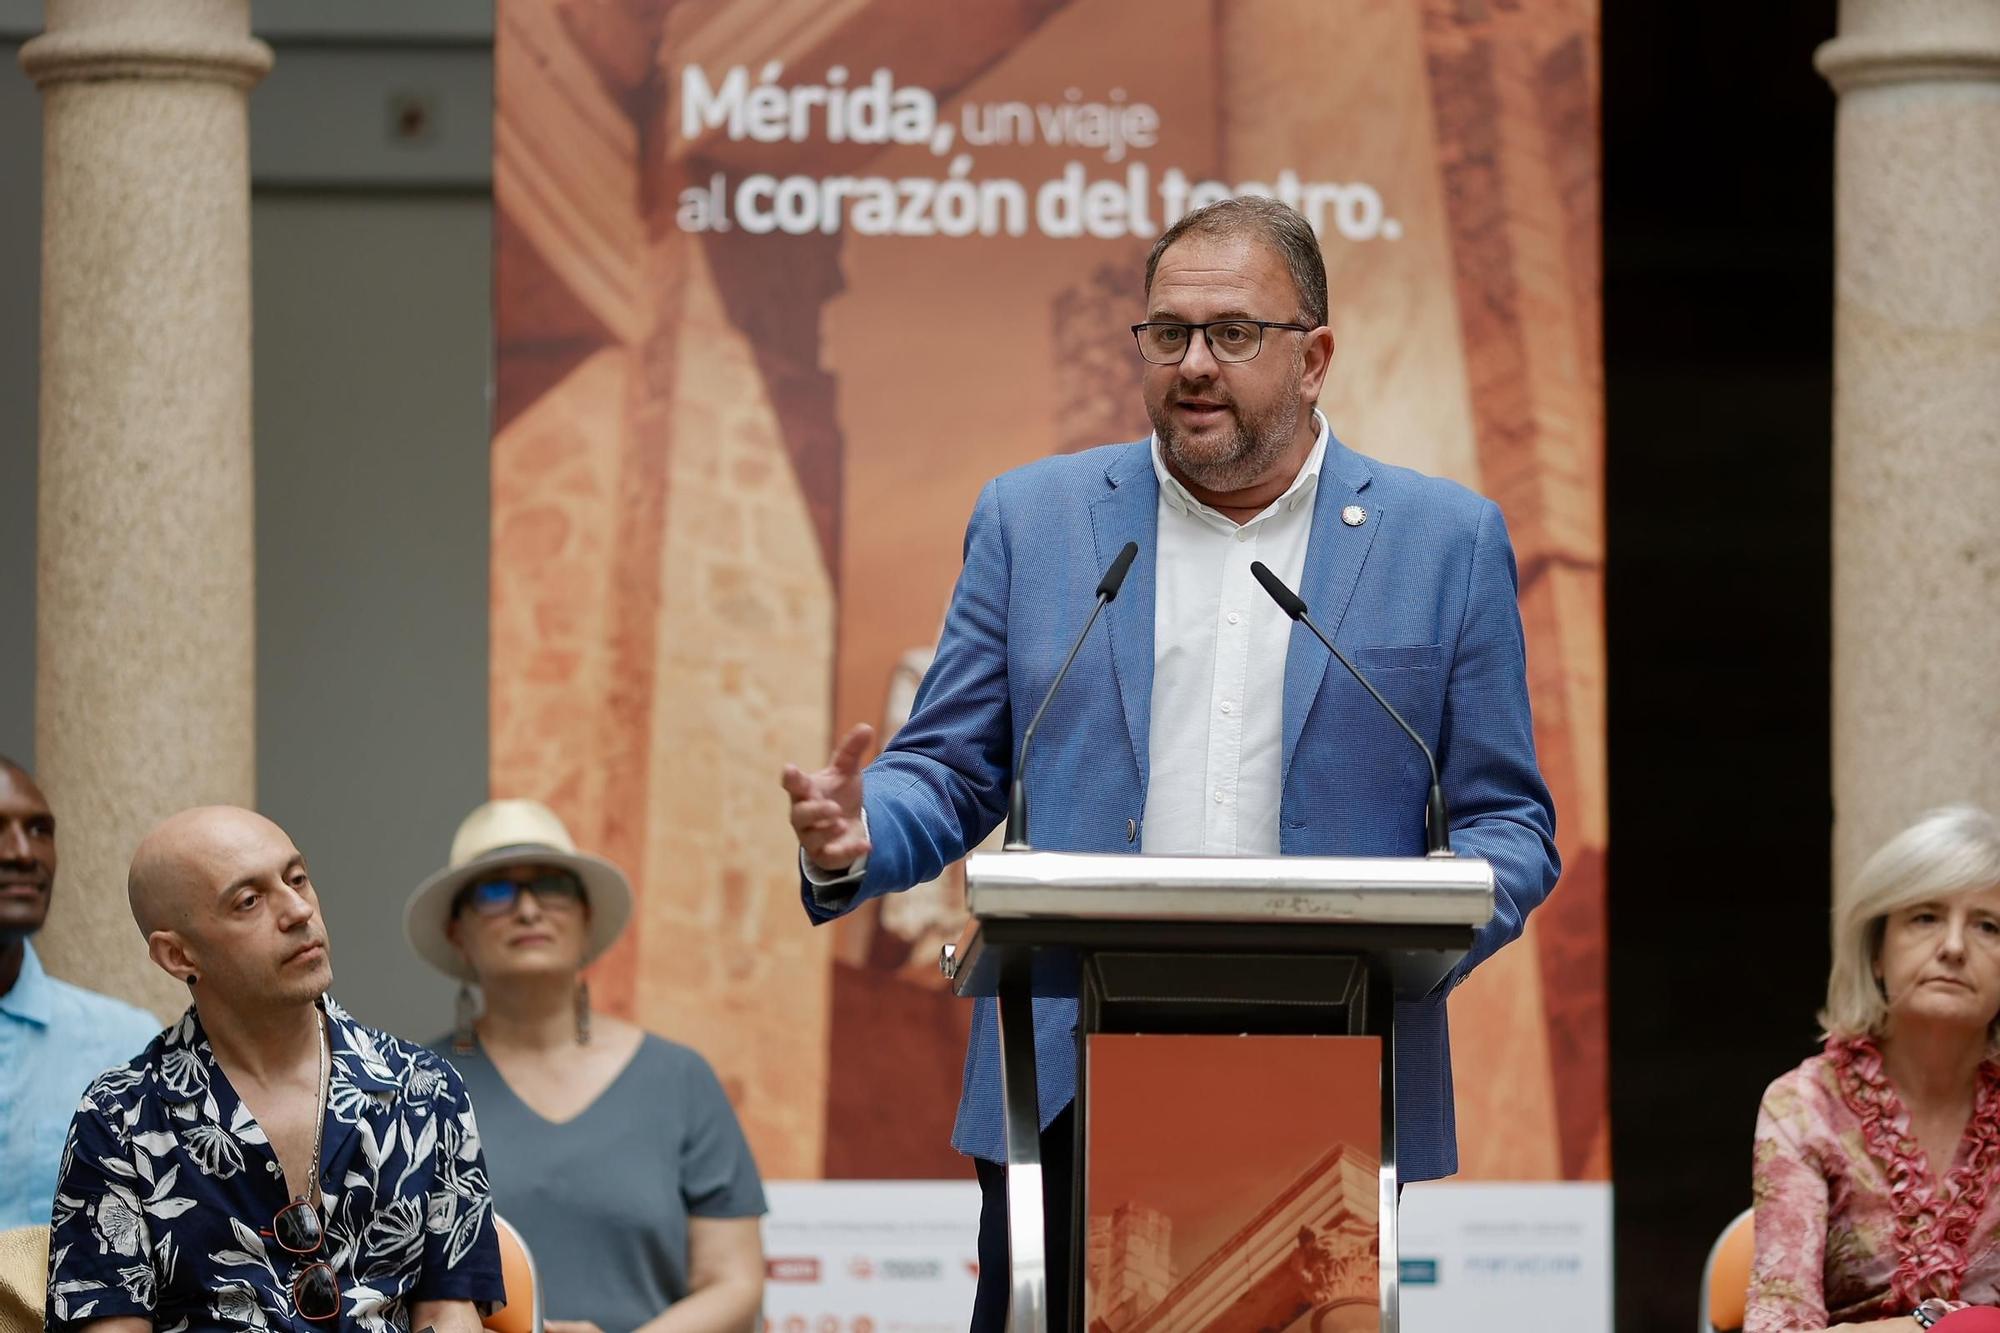 Presentación de la obra Medea, que abre el Festival Internacional de Teatro Clásico de Mérida